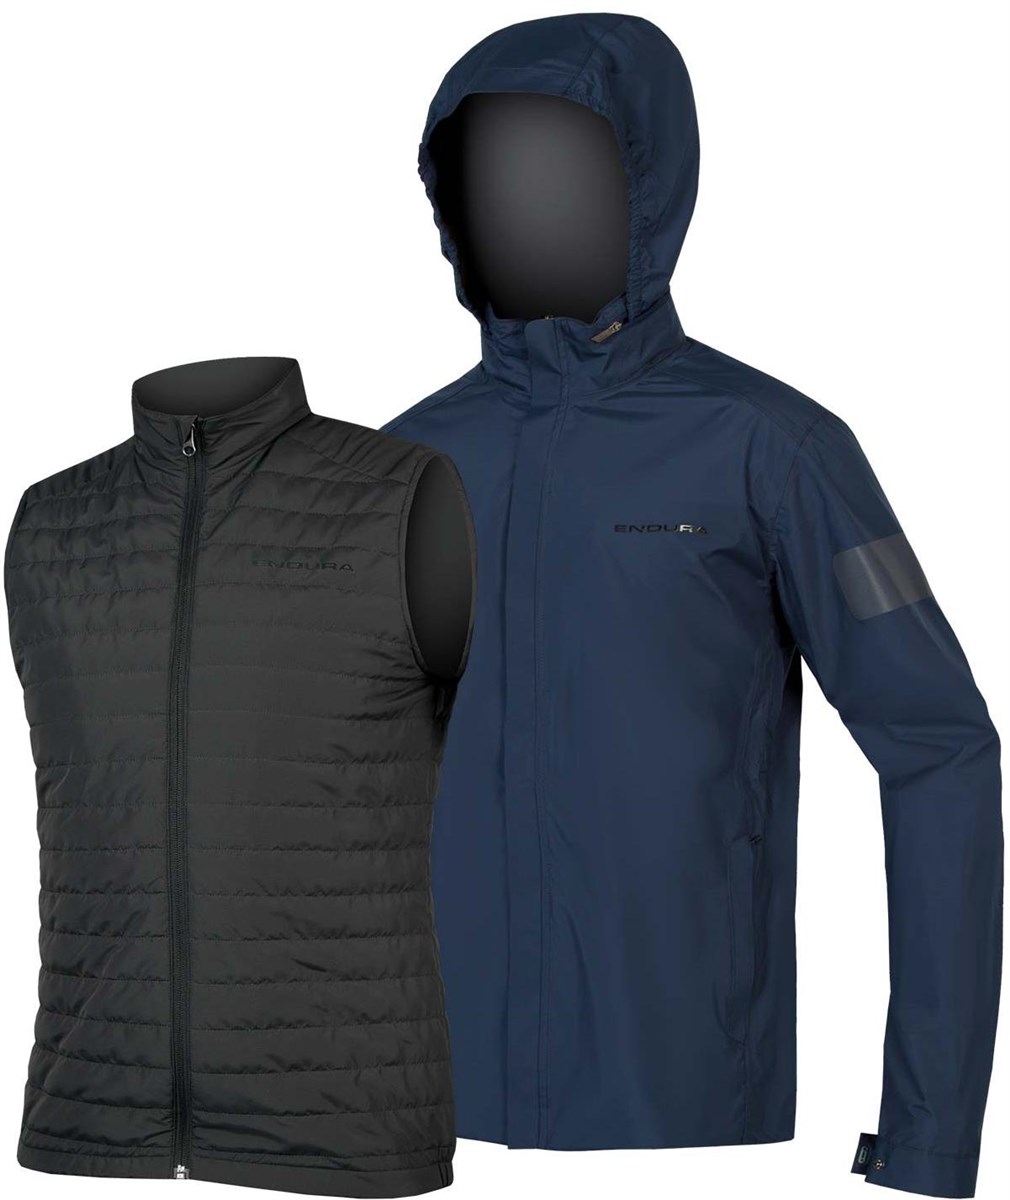 Endura Urban 3 in 1 Waterproof Jacket product image